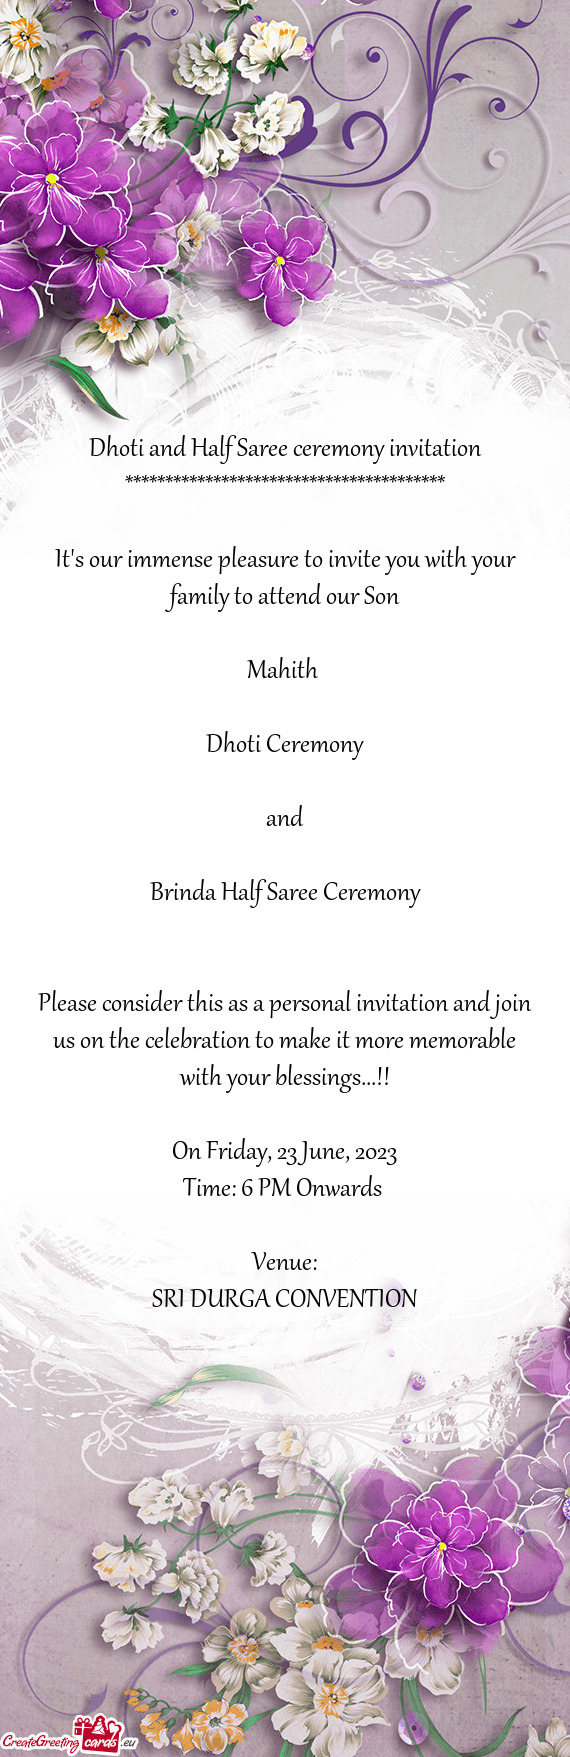 Brinda Half Saree Ceremony